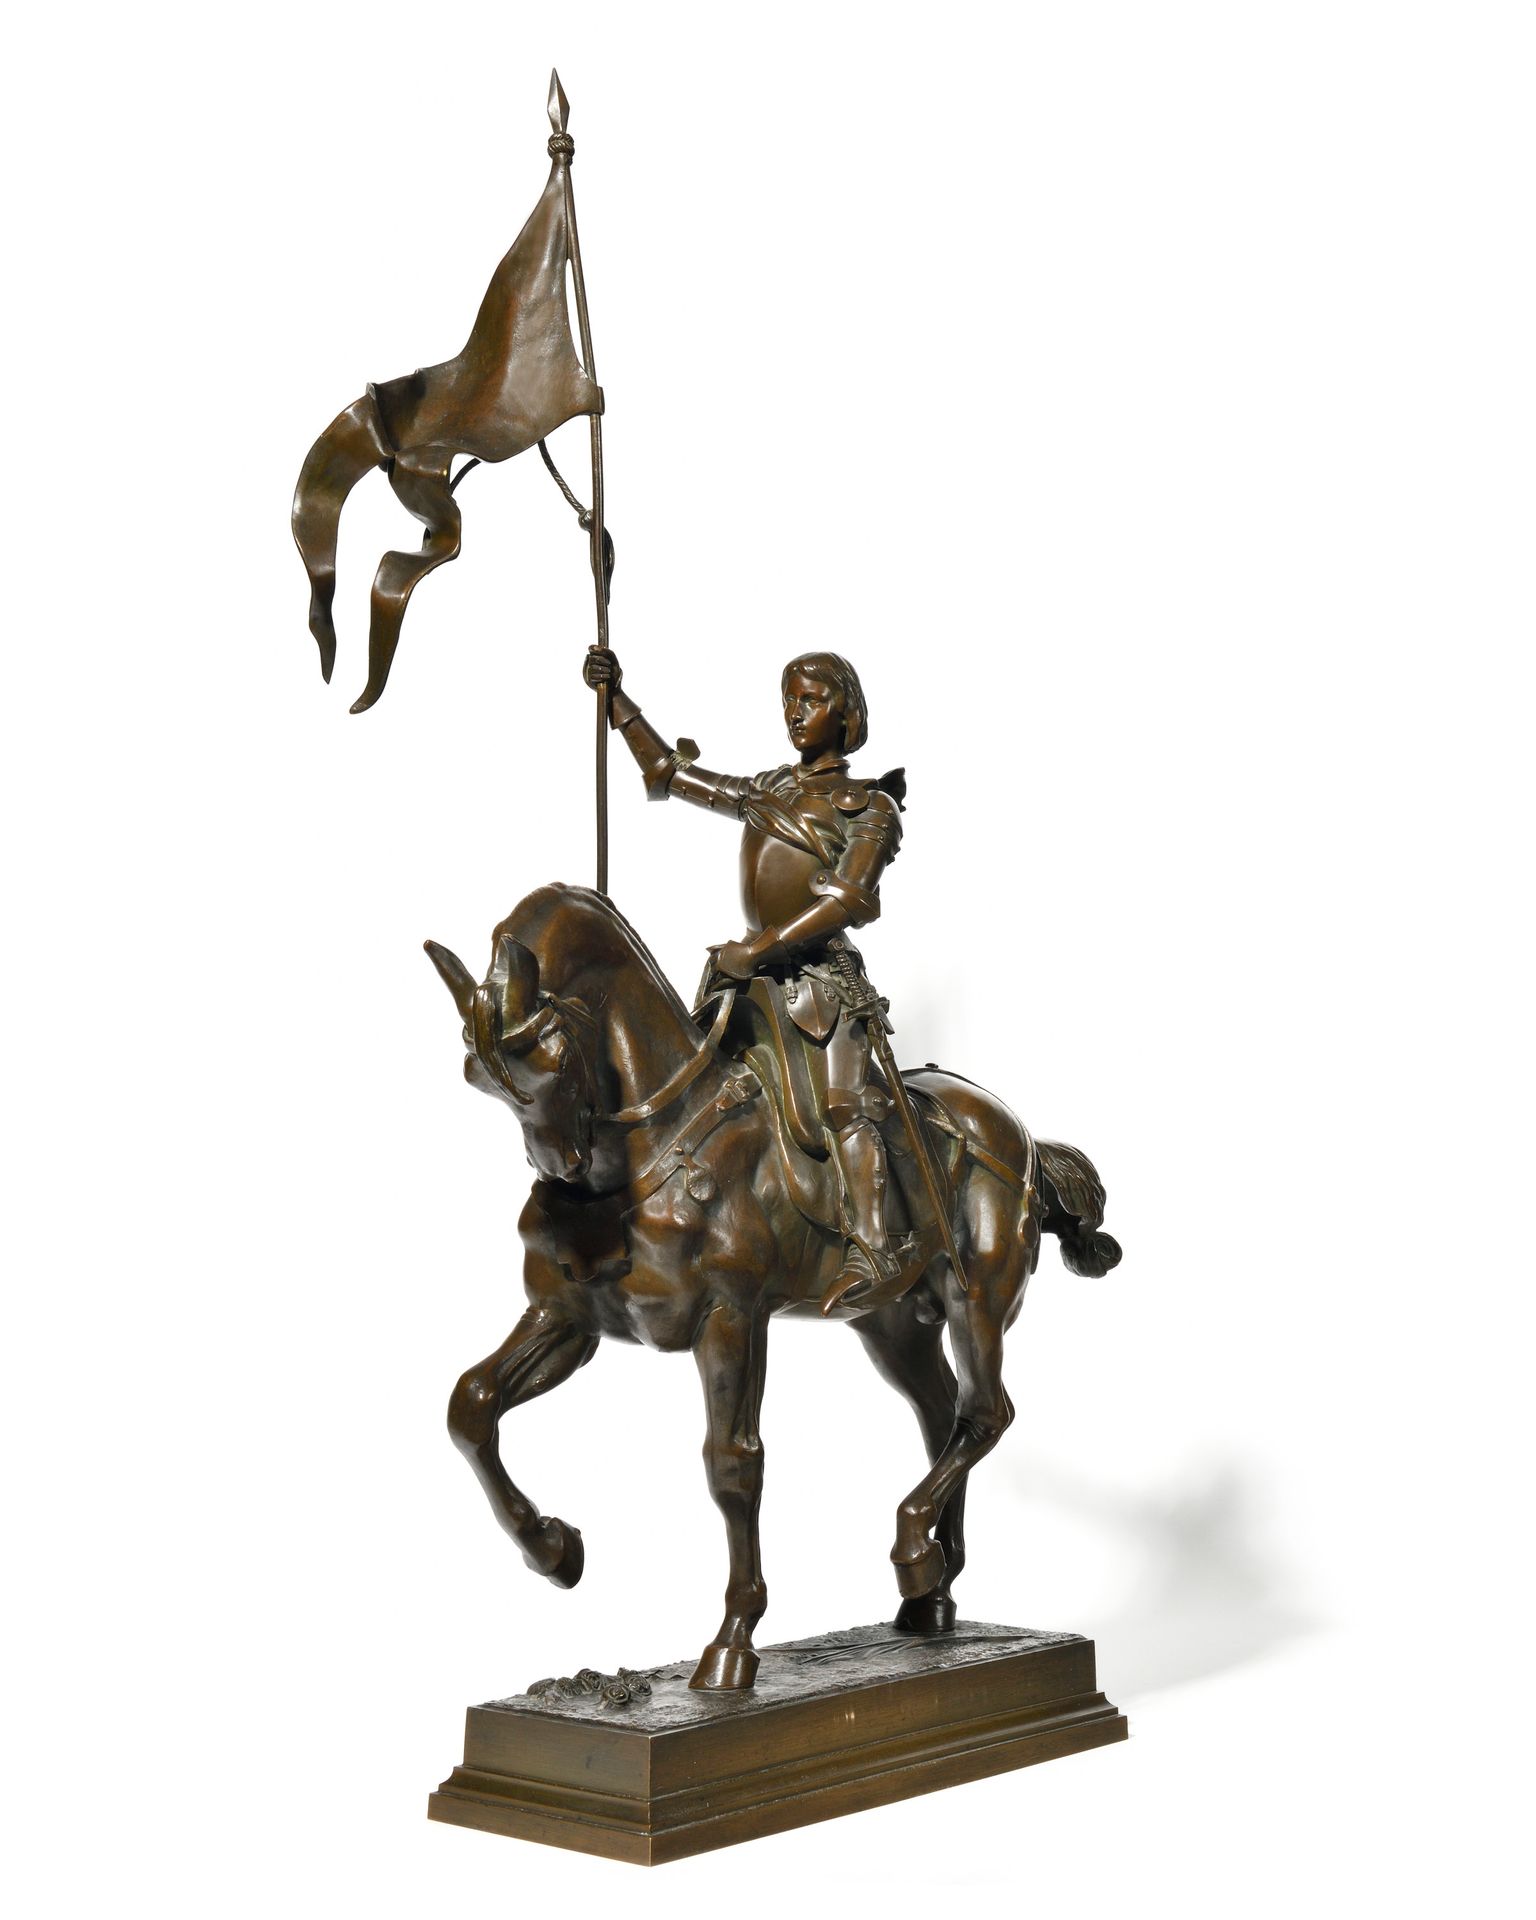 Null 阿尔弗雷德-巴耶 (1839-1895)
圣女贞德的马术雕塑 
棕色铜锈的青铜器 
台阶上有签名
高87厘米，宽50厘米